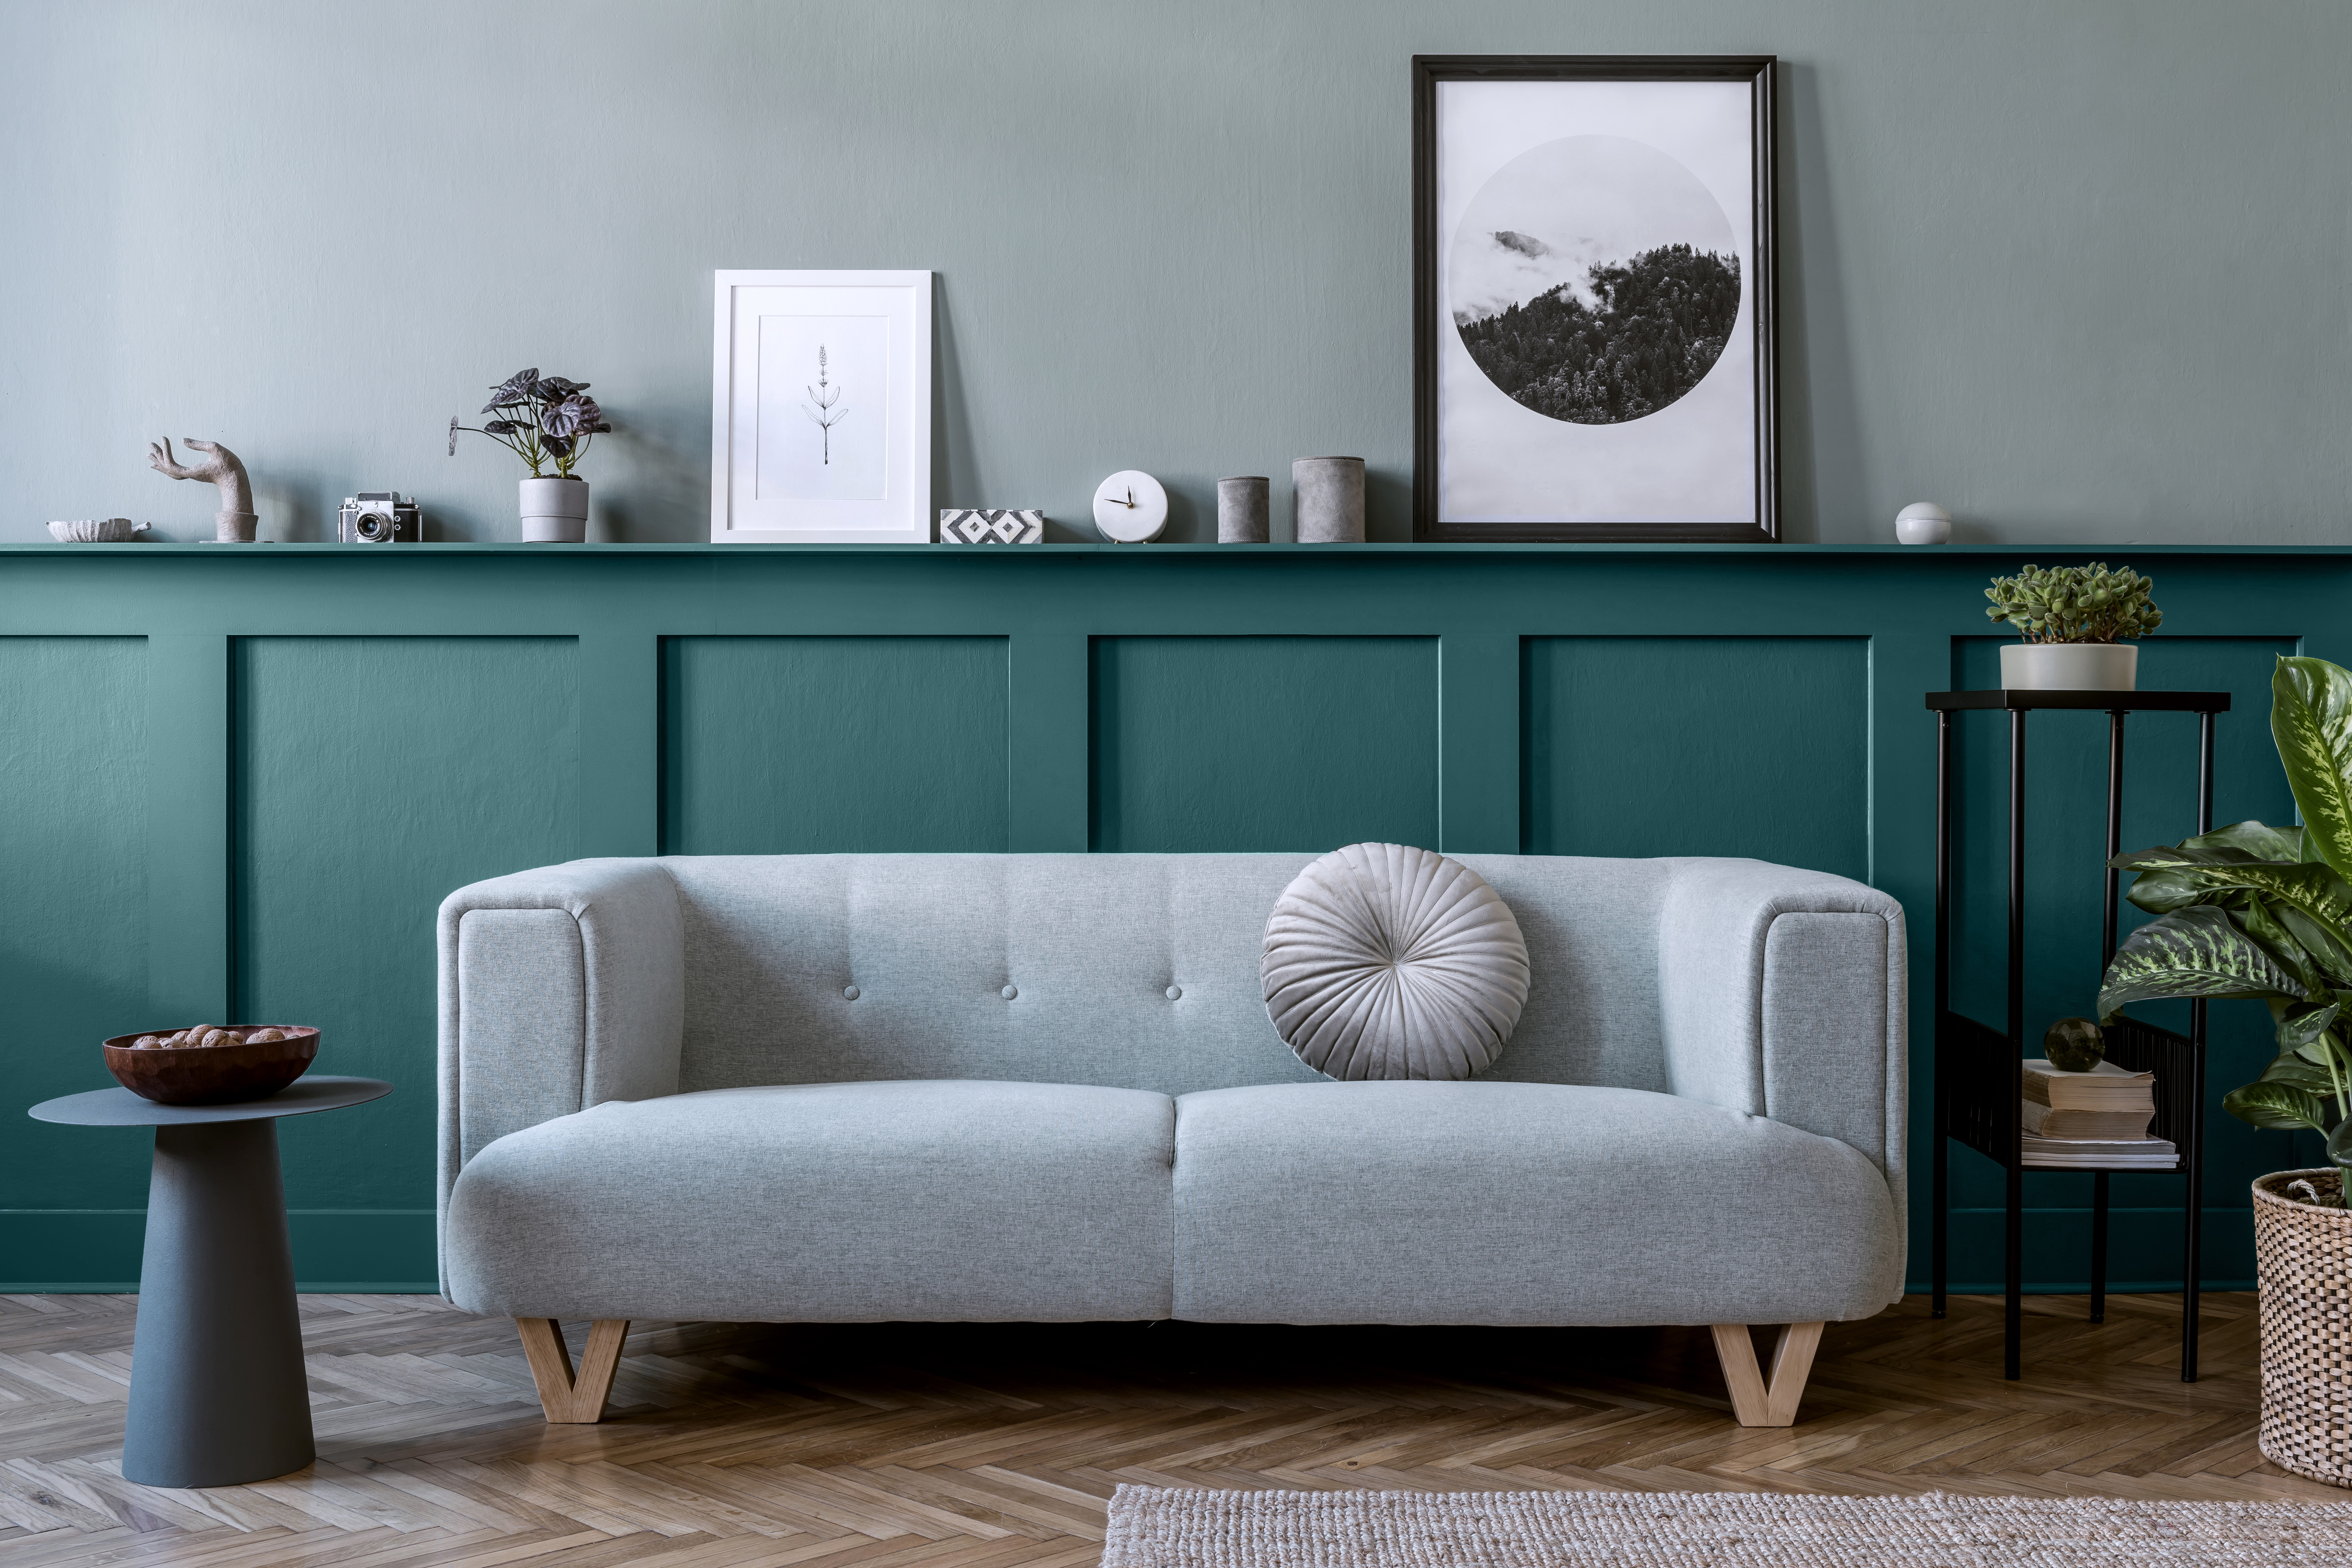 Un salon avec un mur d'accent inférieur. Le haut du mur est peint dans une couleur bleu-vert presque neutre appelée Aqueux. La couleur du mur inférieur s'appelle Abîme d'océan. La pièce est enjolivée d'éléments décoratifs décontractés et neutres comme le sofa rembourré gris clair, la table d'appoint noire et les petis objets décoratifs de couleur gris béton.